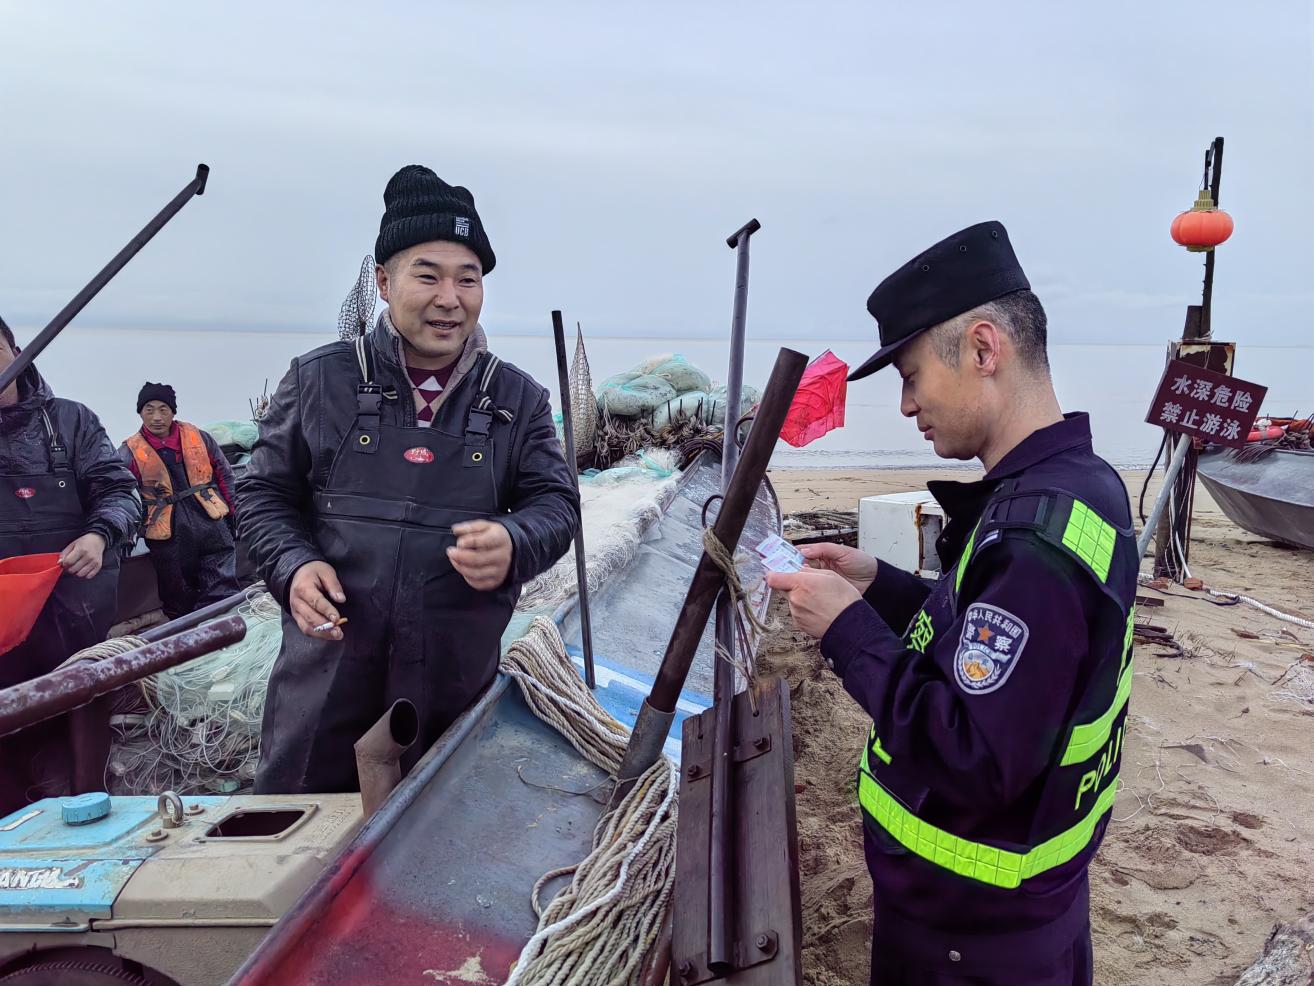 移民管理警察严格检查渔民《边境地带作业许可证》。